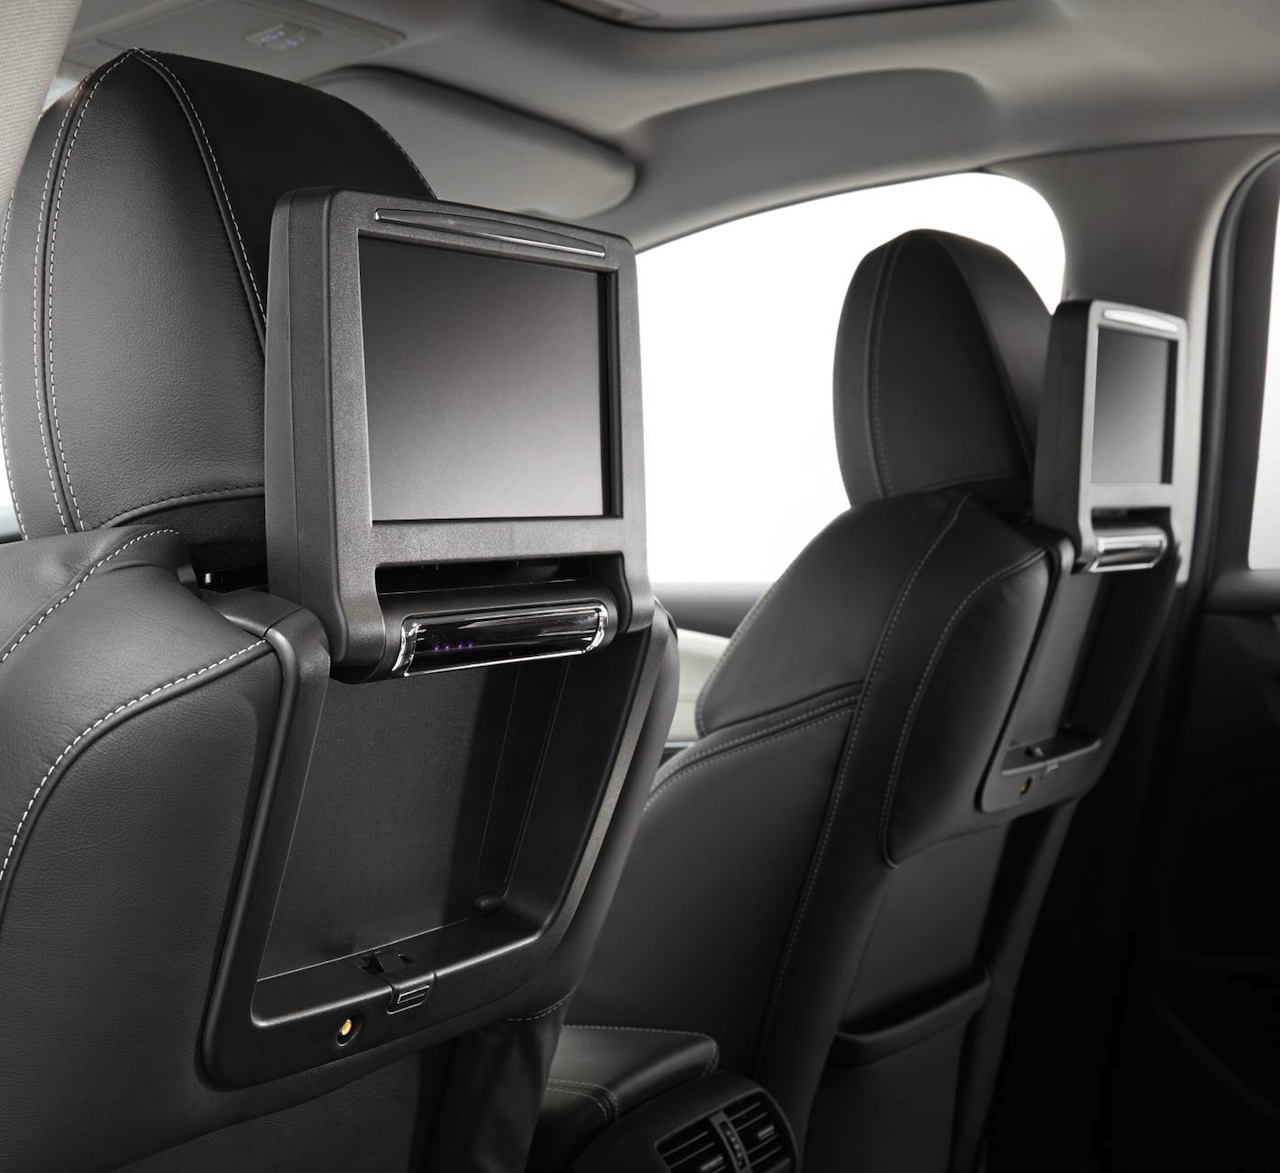 2014-Holden-Caprice-V-rear-seat-entertainment.jpg